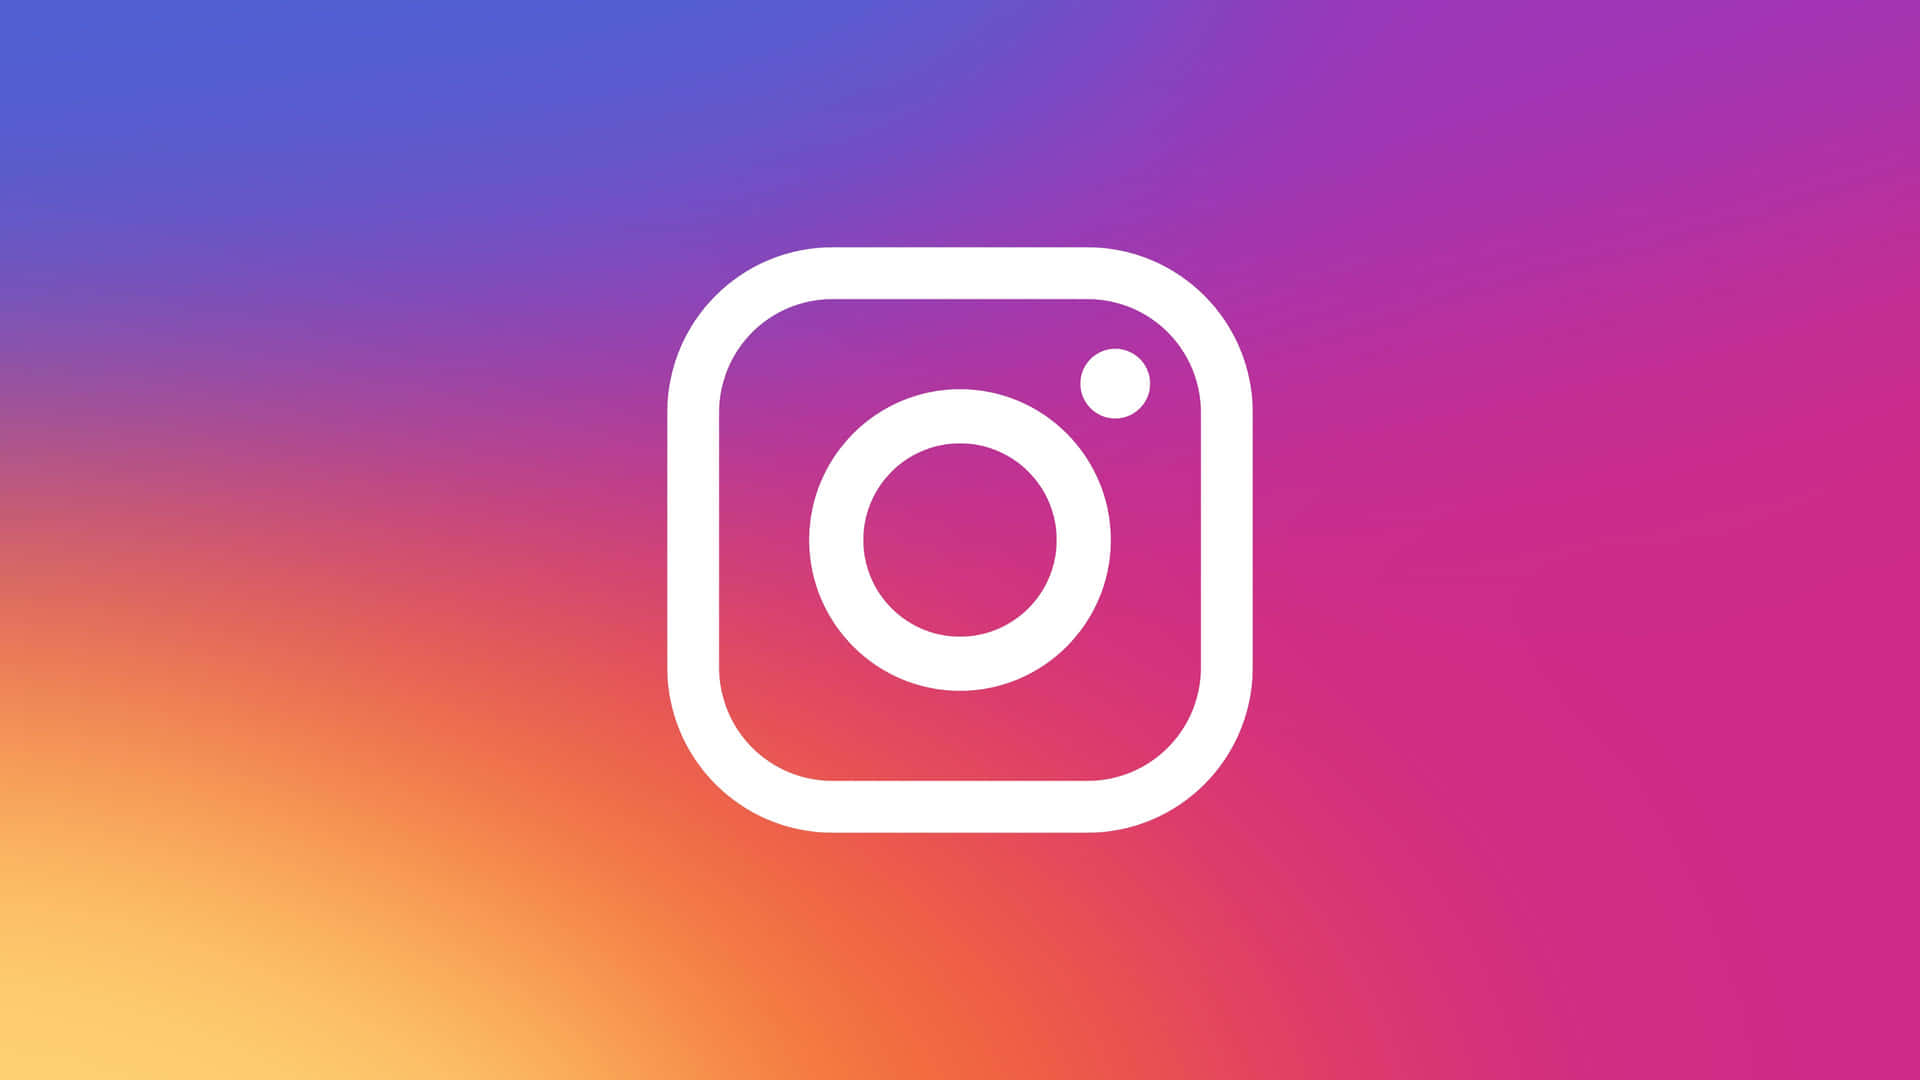 Aesthetic Instagram New Logo Wallpaper